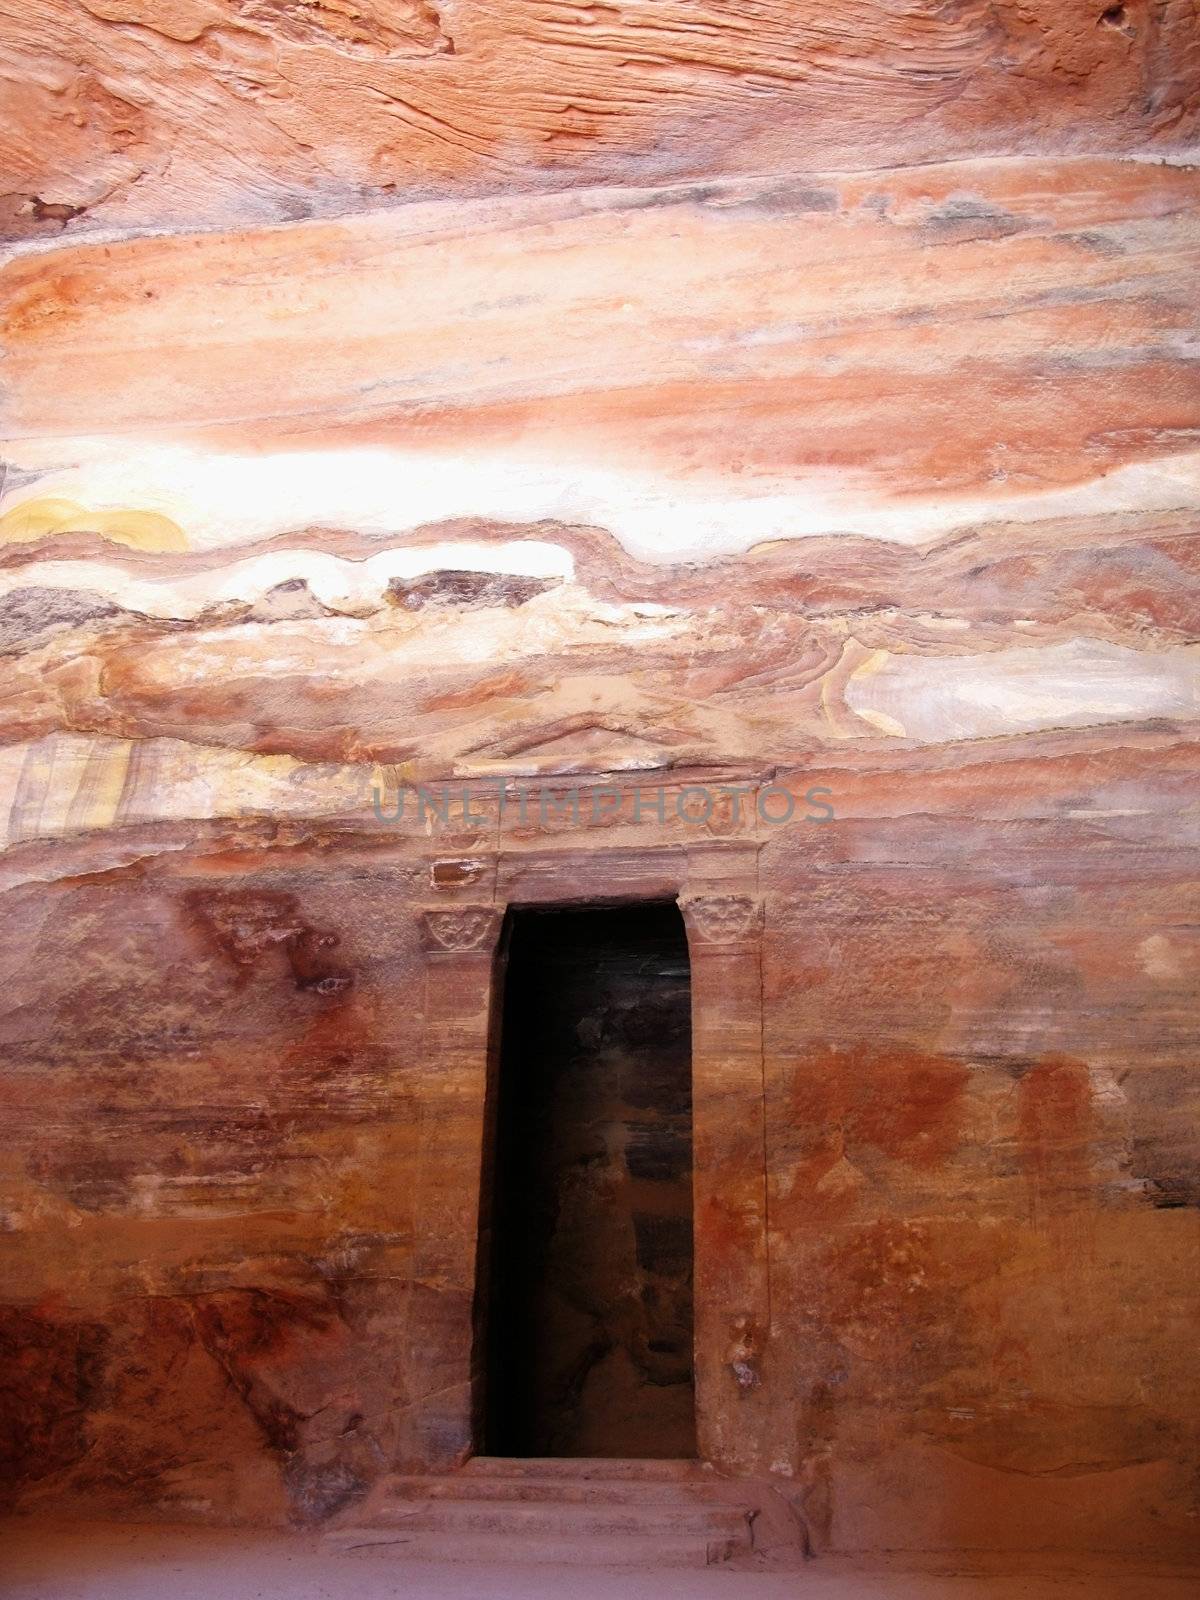 Door in ancient temple of Petra, Jordan, Middle east